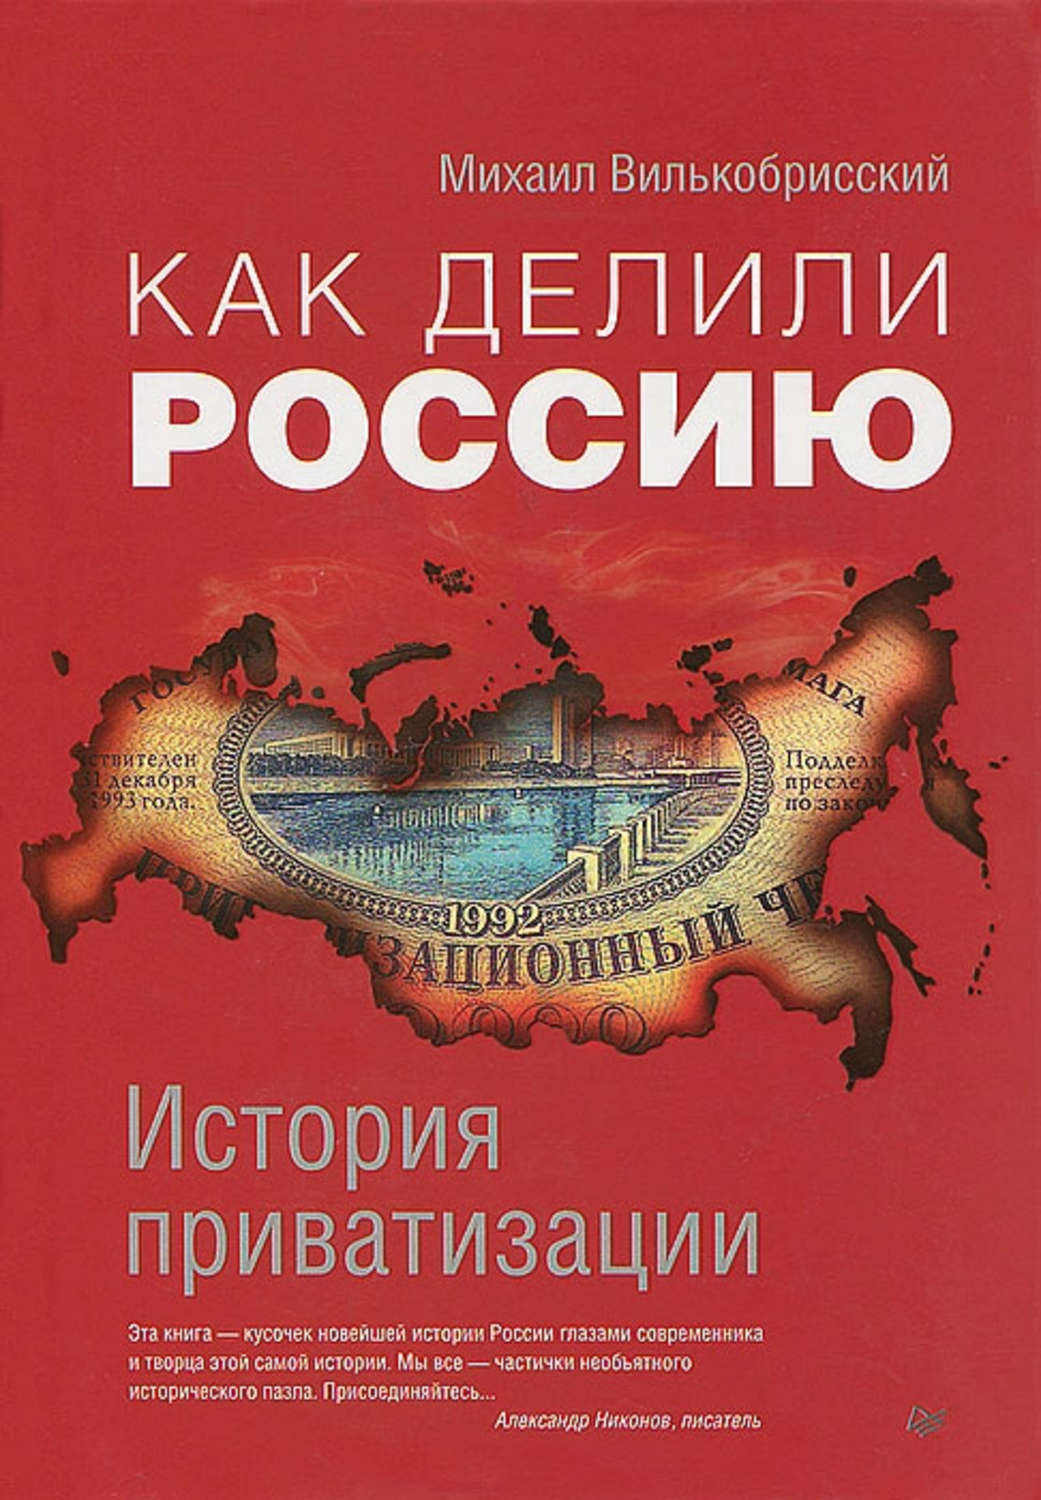 Автор приватизации. Книга история России. Приватизация это в истории. Приватизация книги. Книга приватизация 90-х.